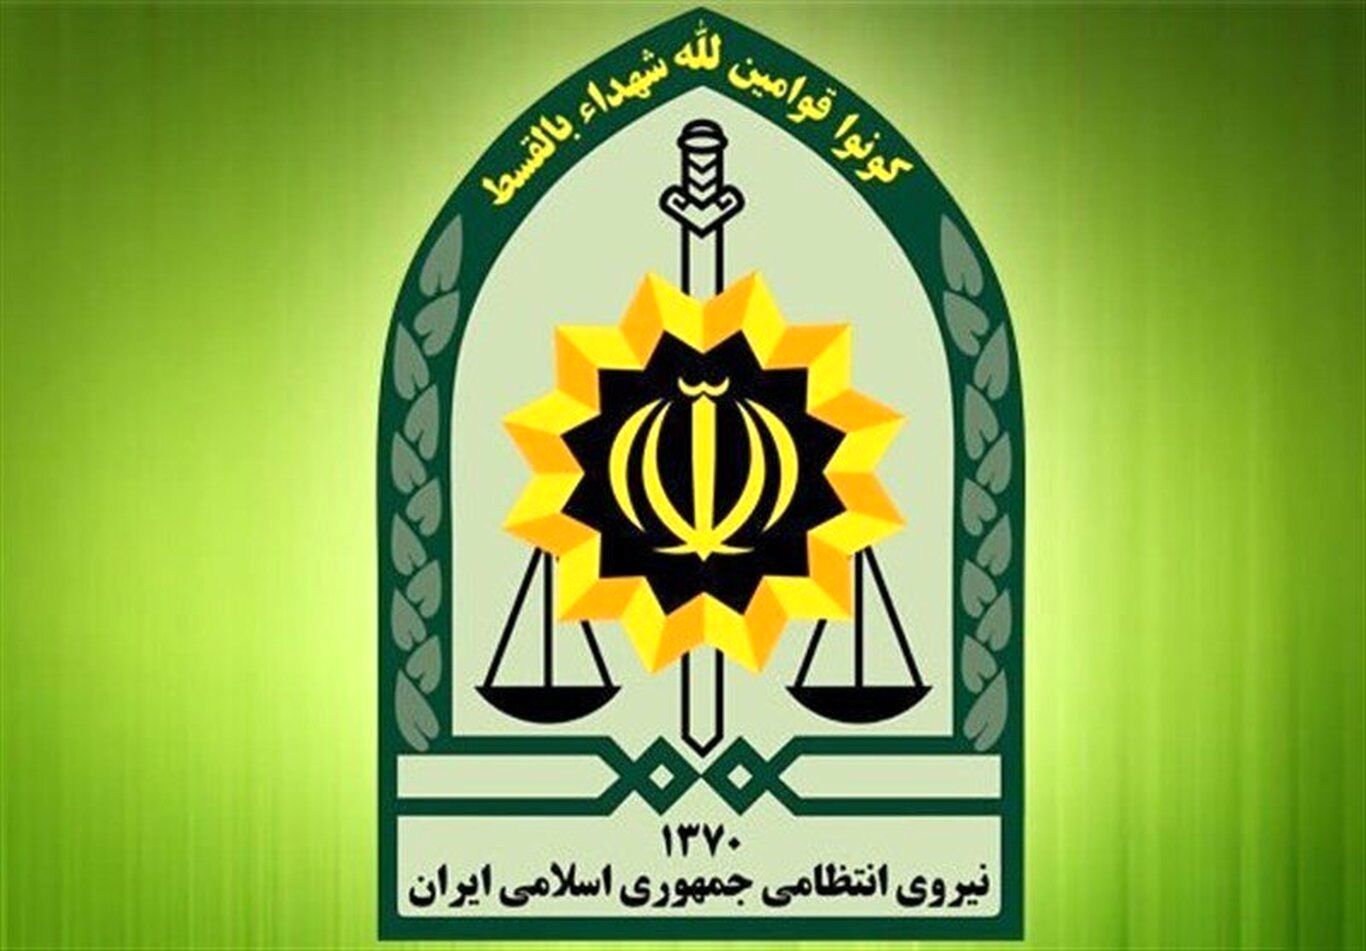 جزئیات کشف و خنثی سازی ۲ بسته انفجاری در تهران